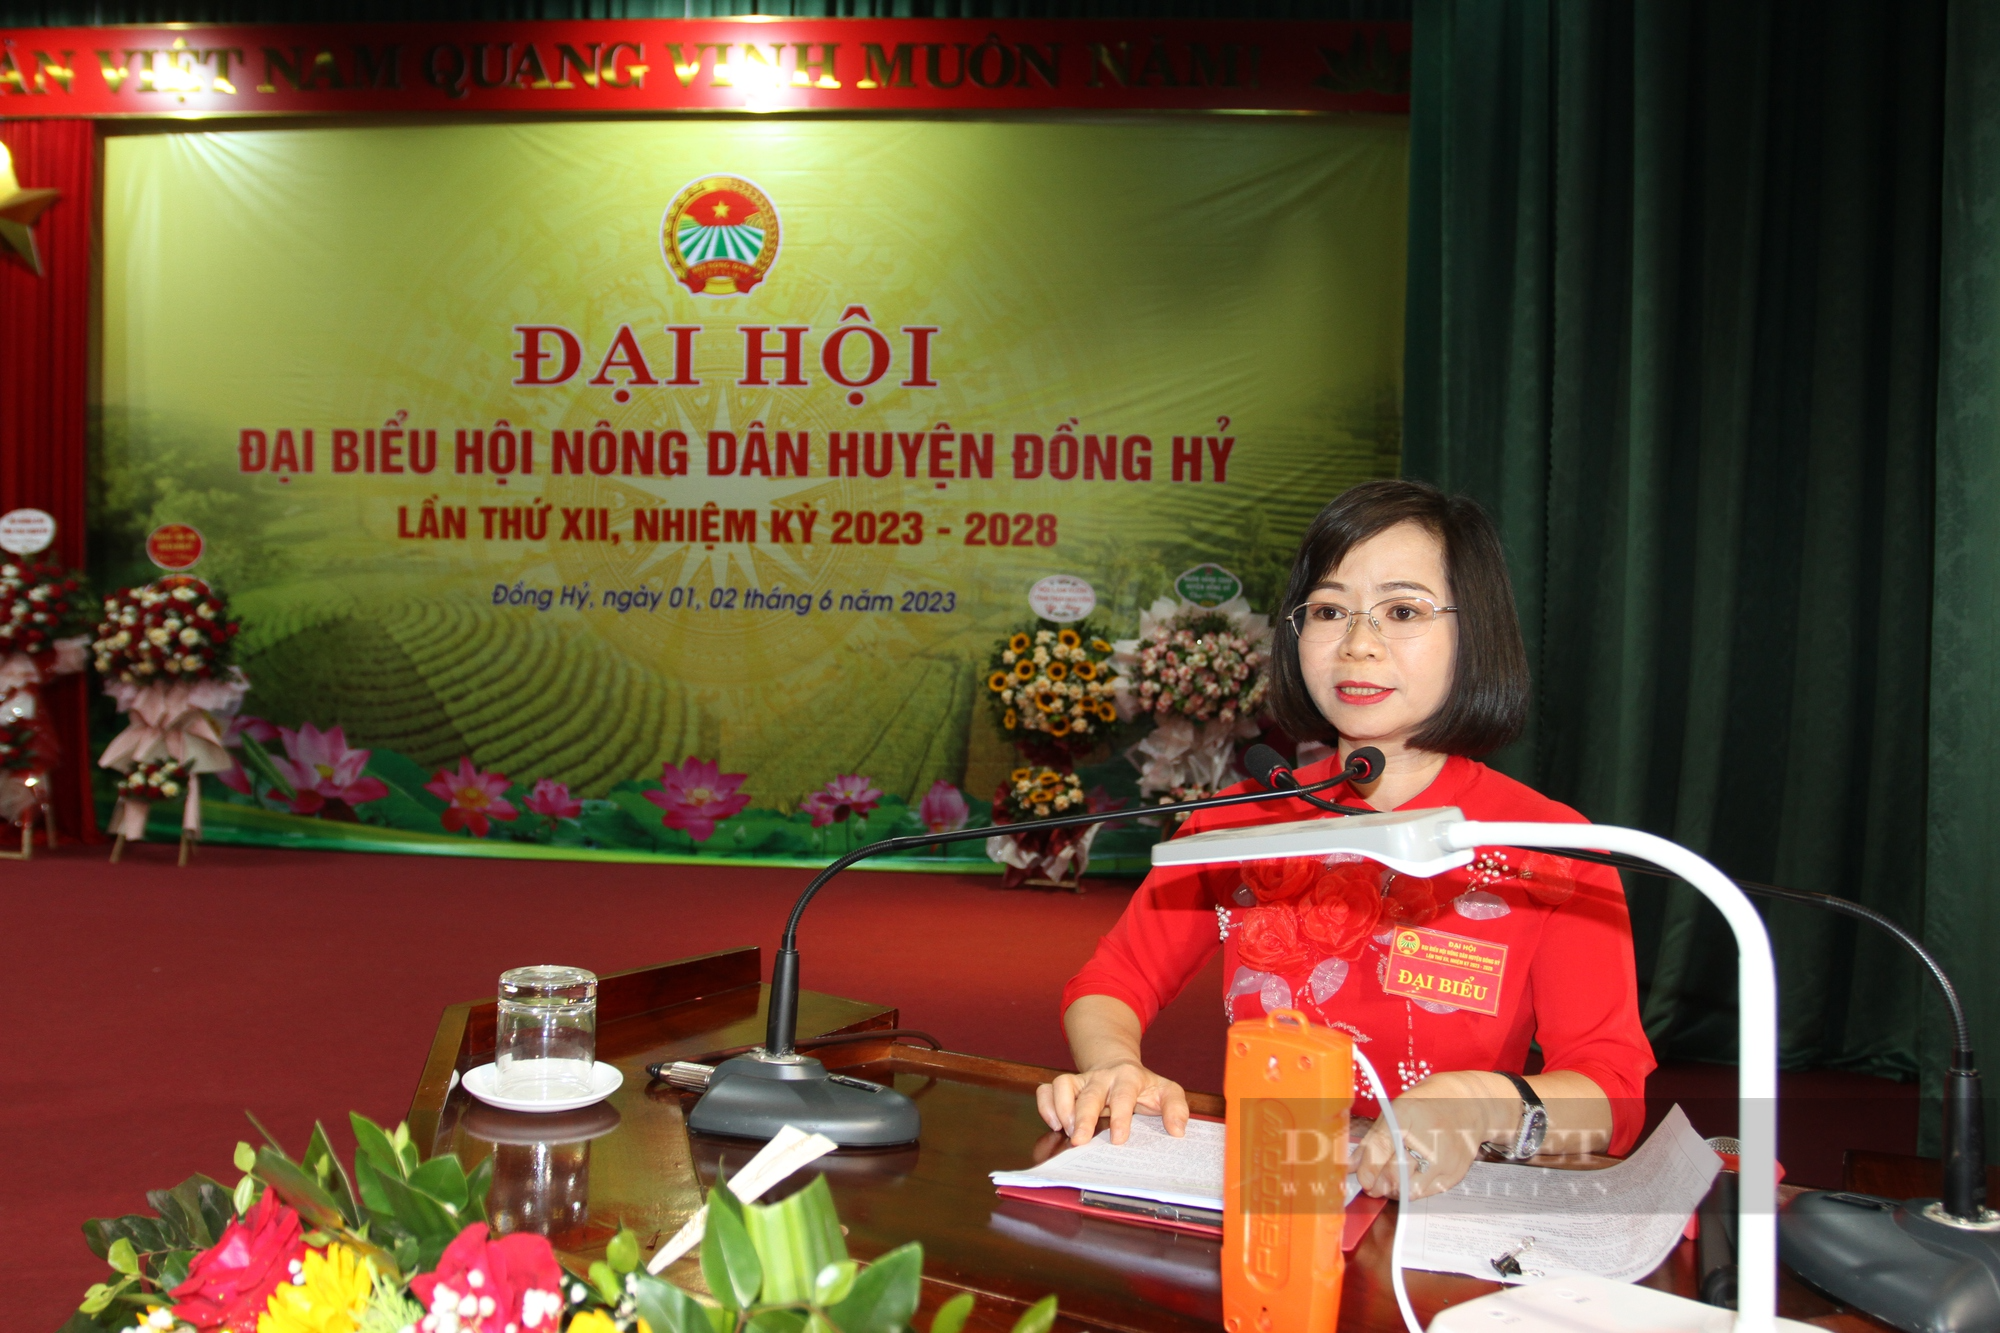 Đại hội Nông dân huyện Đồng Hỷ: Bà An Thị Hương tái đắc cử chức danh Chủ tịch  - Ảnh 2.